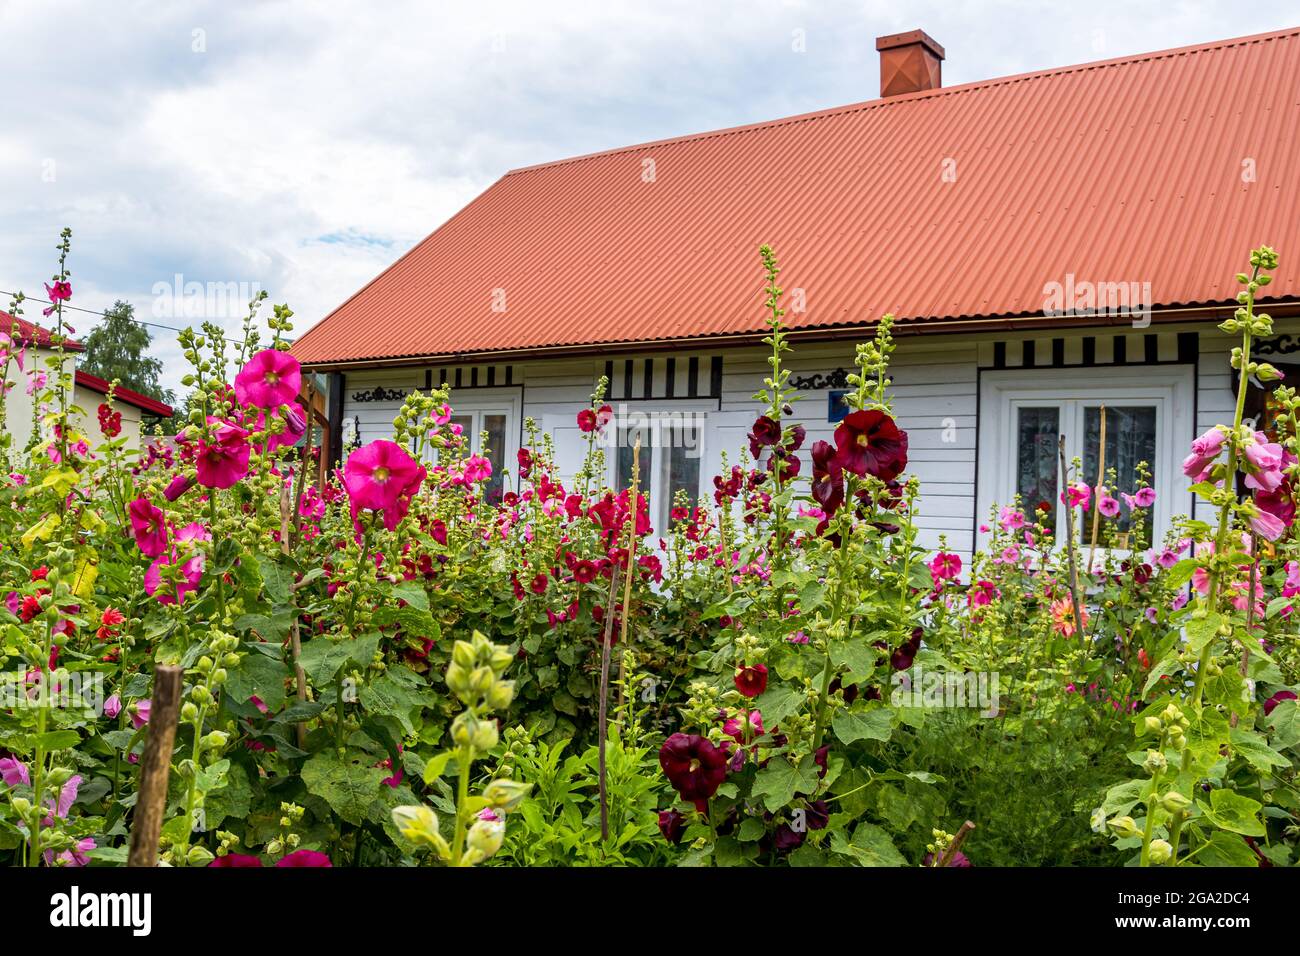 Altes, traditionelles Landhaus, versteckt zwischen hohen, bunten Blumen am bewölkten Himmel. Krasnobród, Roztocze, Polen Stockfoto